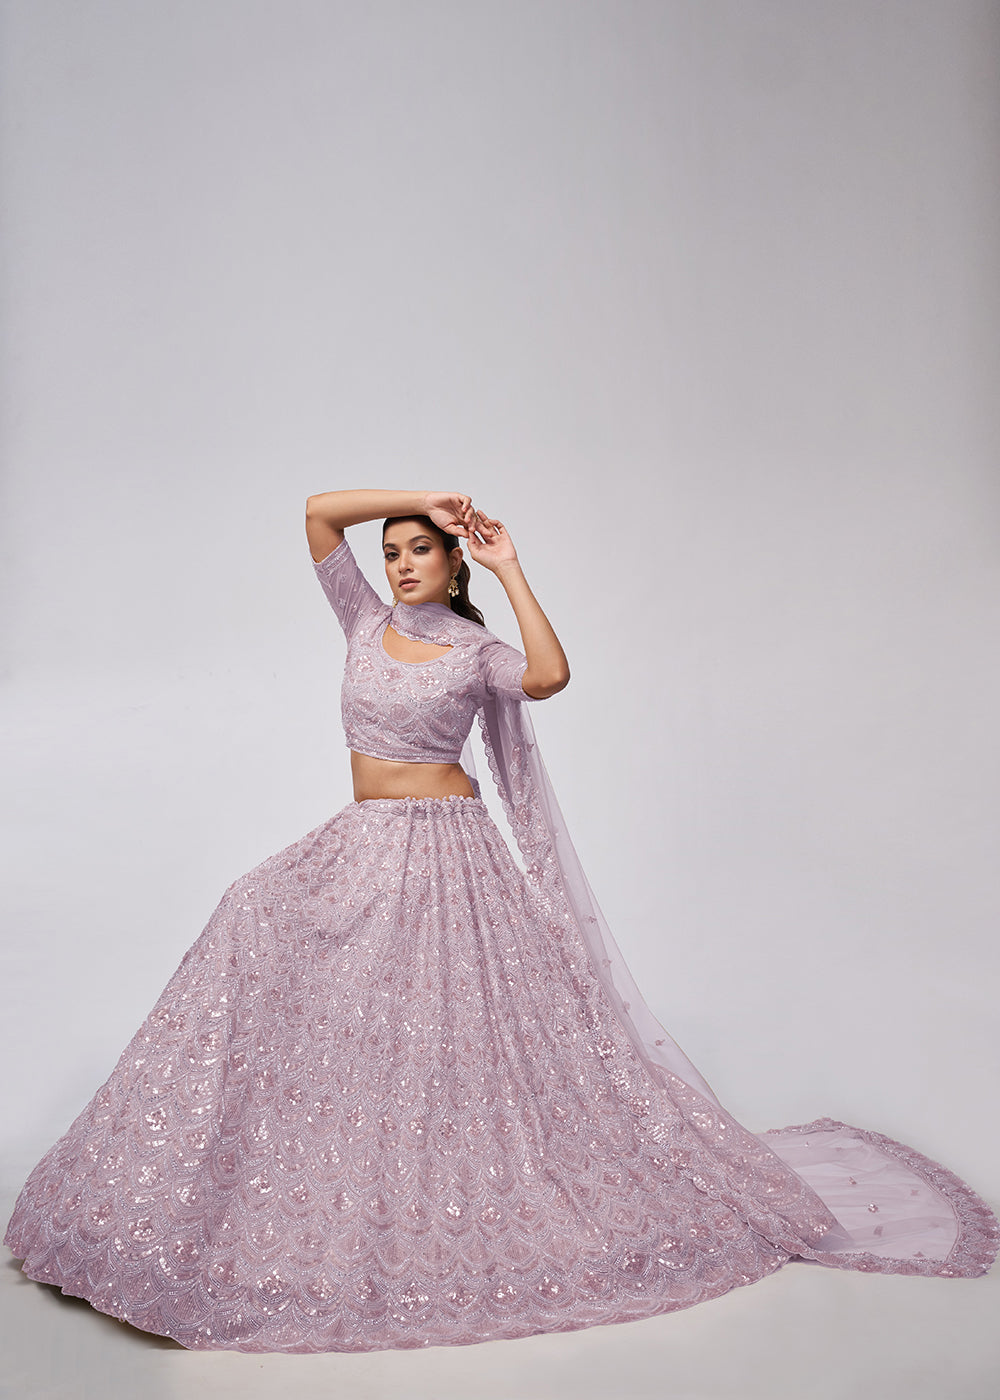 Buy Now Dazzling Mauve Bridal Embroidered Designer Lehenga Choli Online in USA, UK, Canada & Worldwide at Empress Clothing.